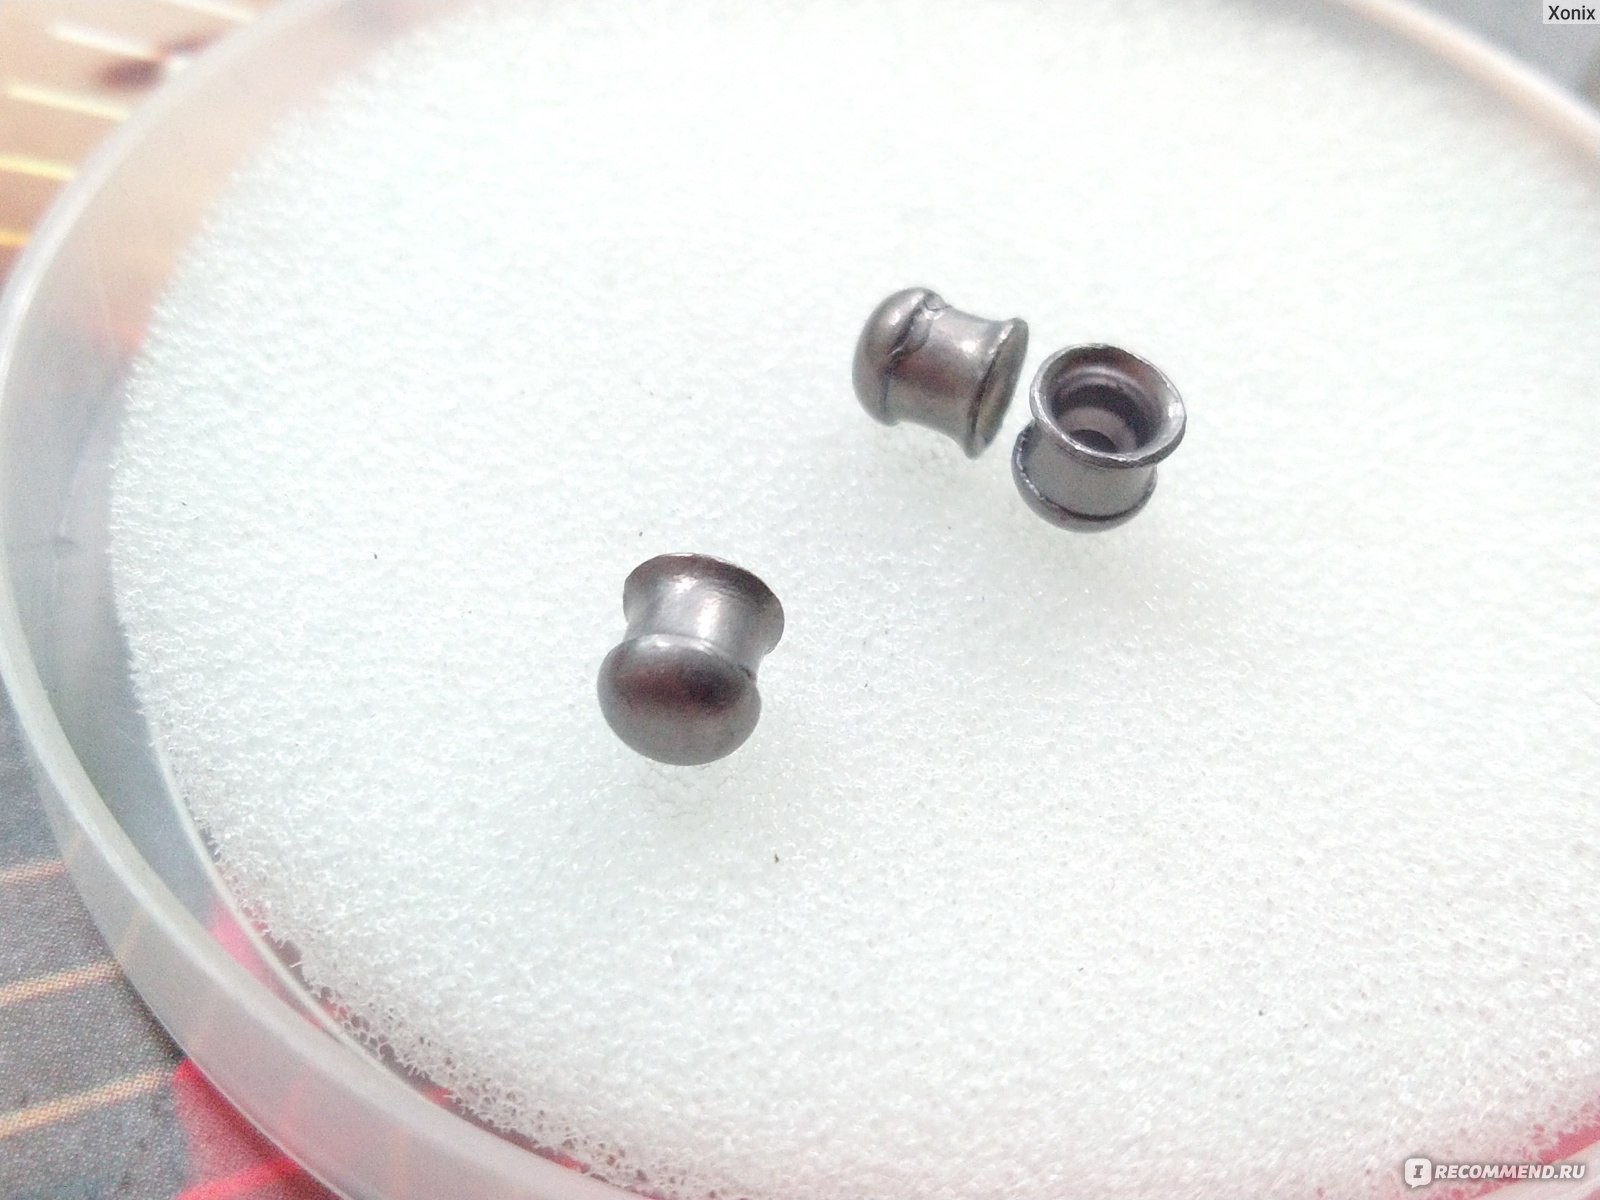 Пневматические пули Люман Domed pellets light 4,5 мм 0,45 грамма (300 шт.) фото